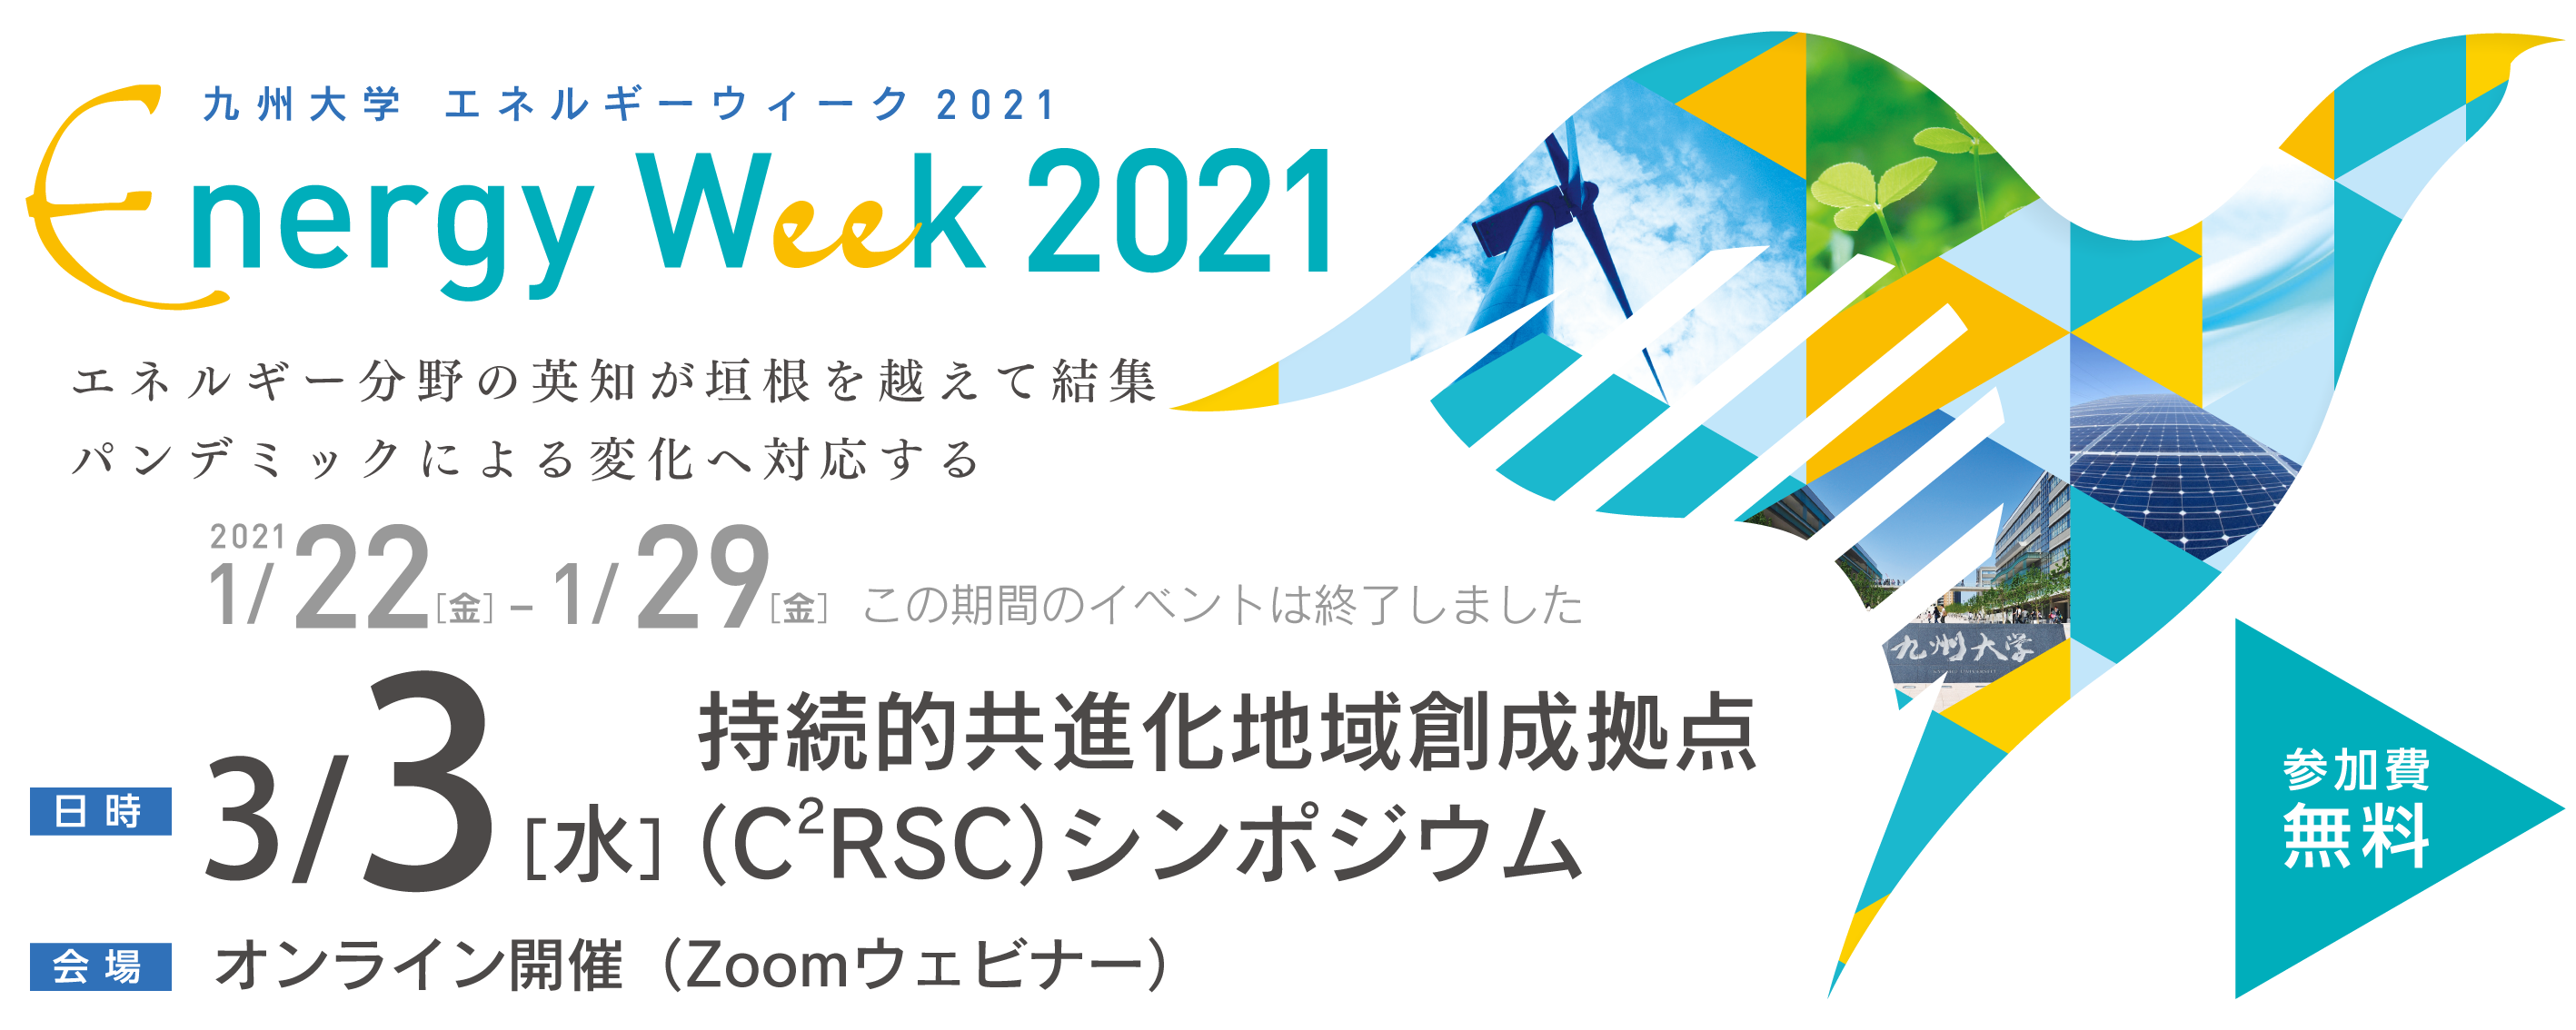 九州大学 エネルギーウィーク 2021